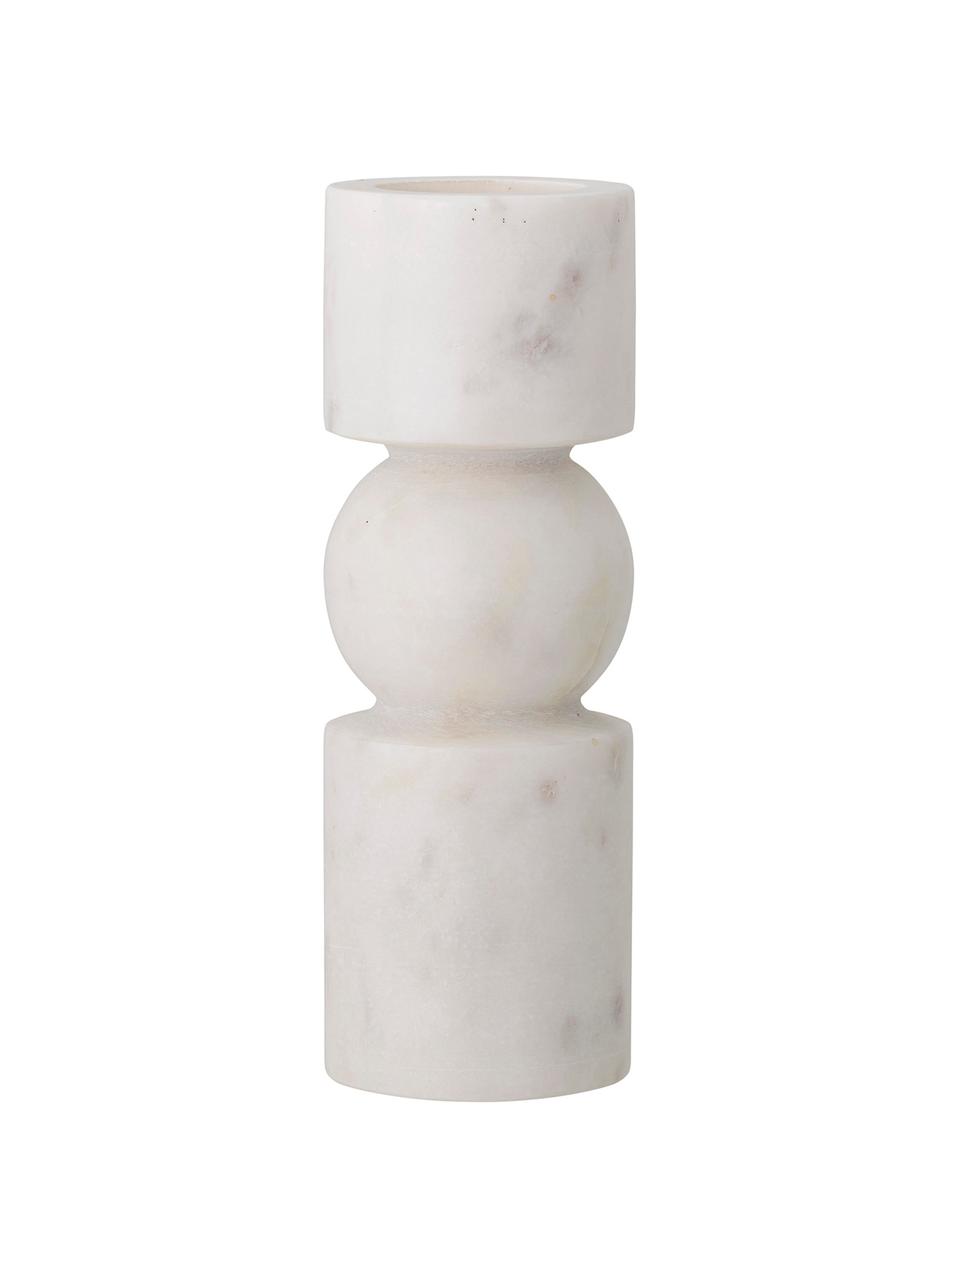 Portalumini Vot, Marmo, Bianco marmorizzato, Ø 7 x Alt. 20 cm